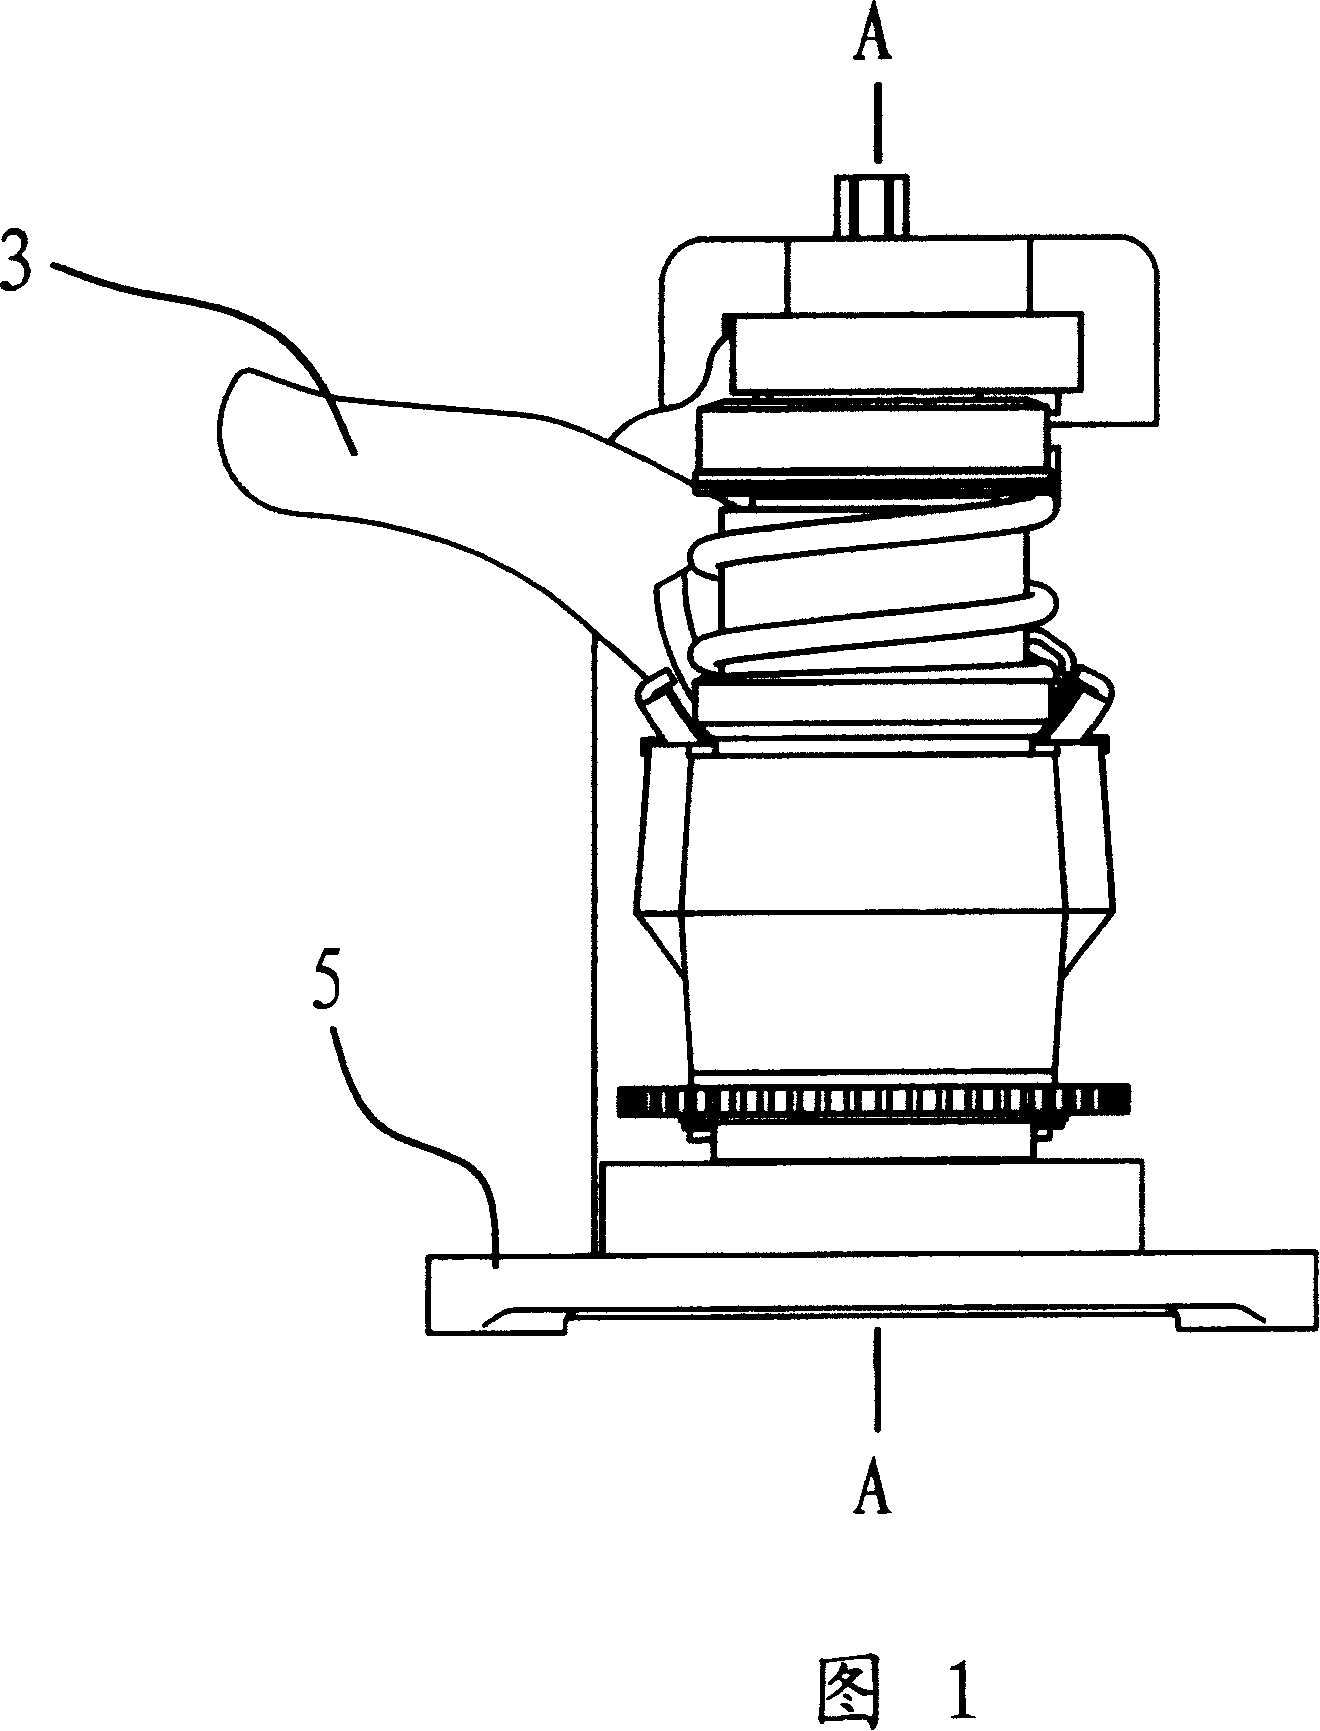 Disk brake slack self-adjusting mechanism